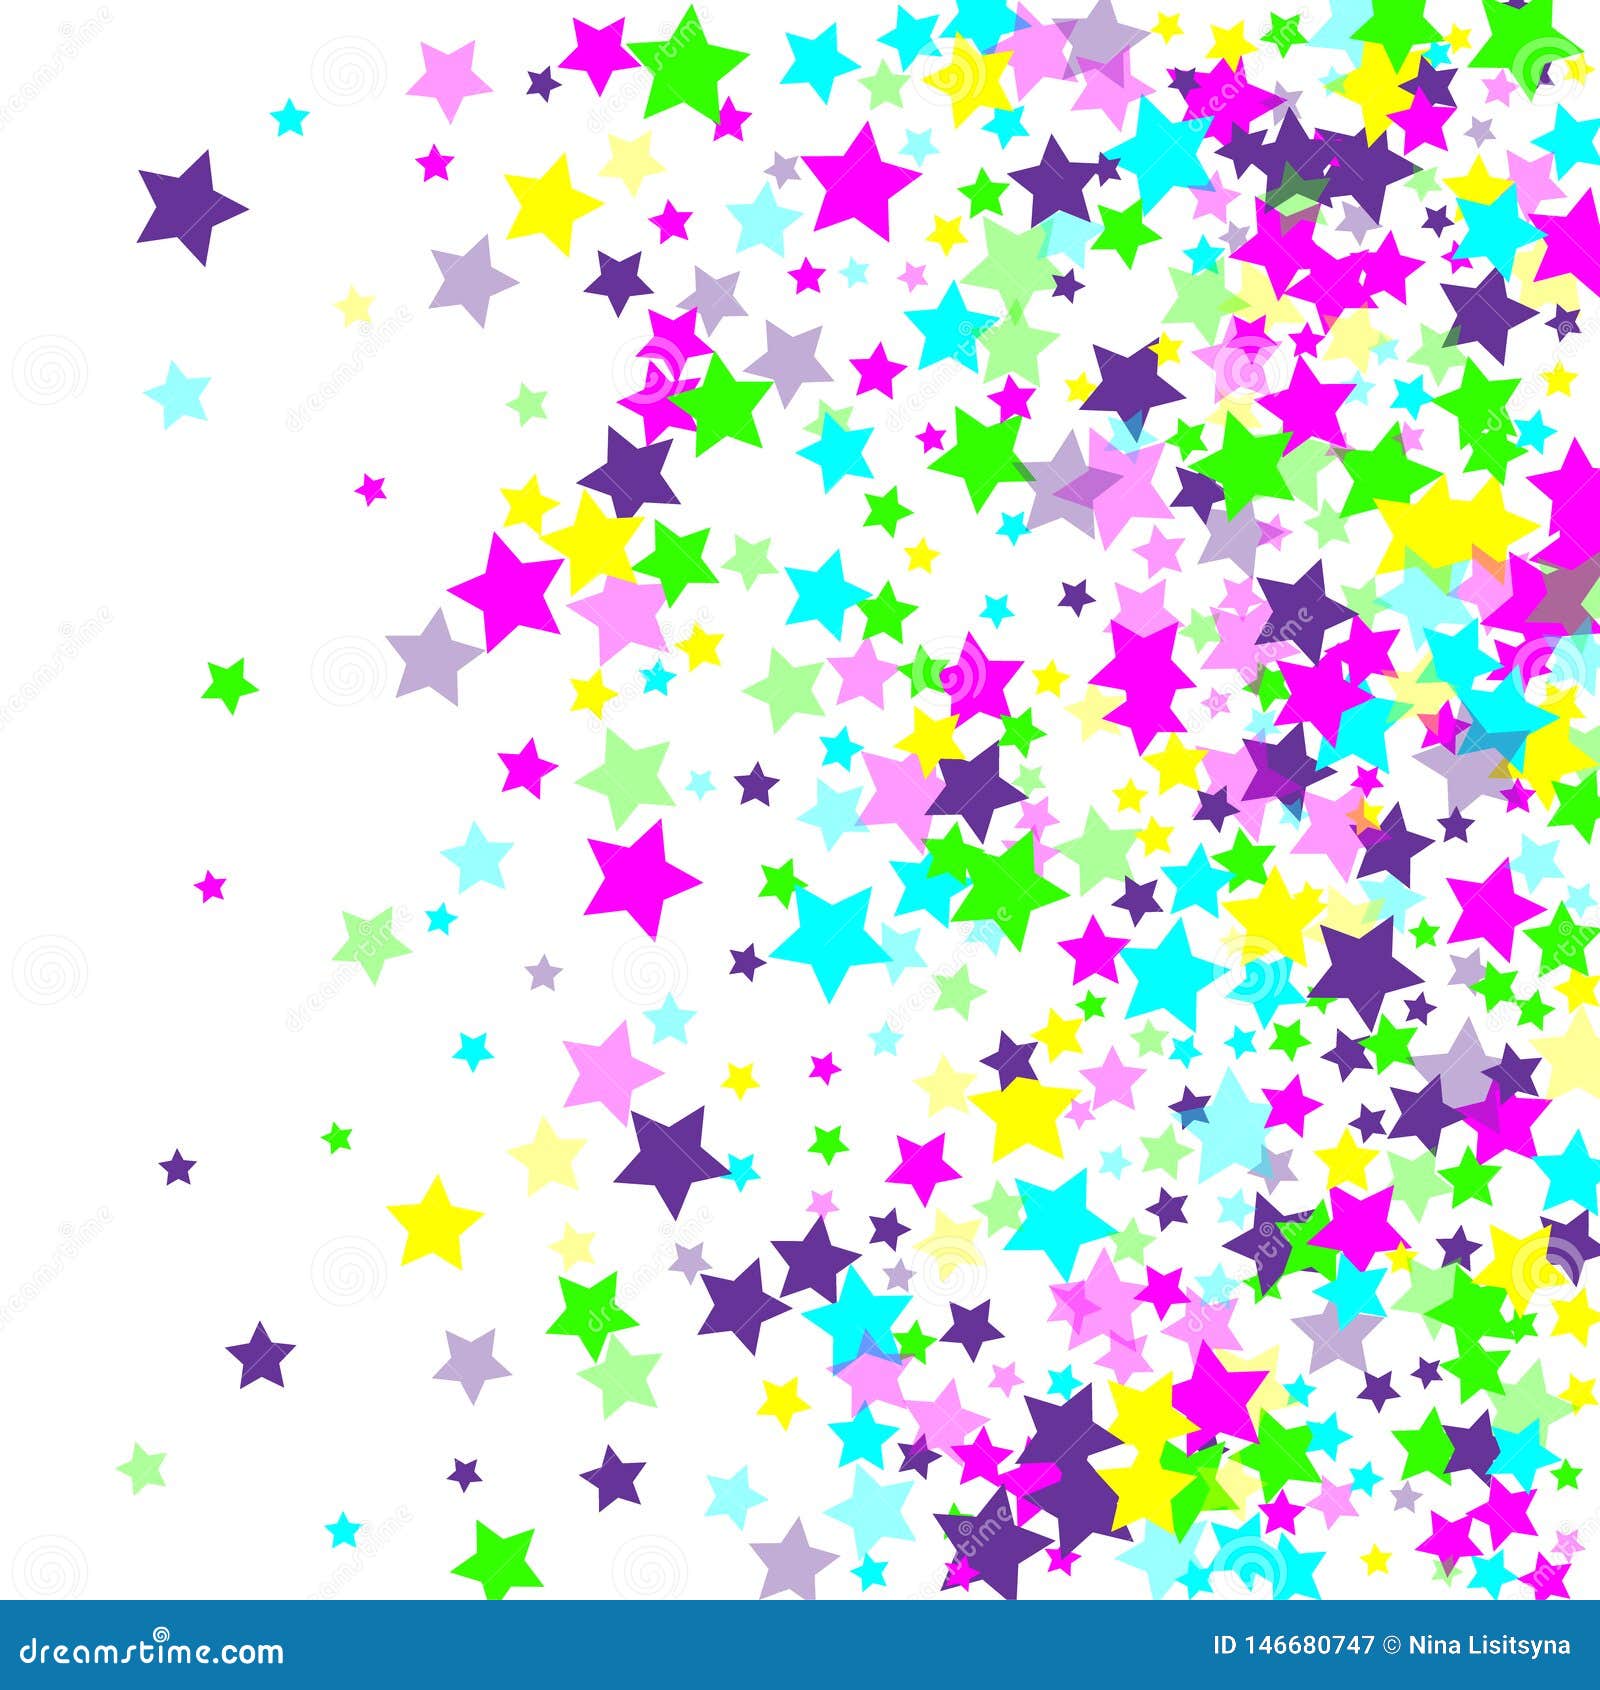 Multicolored Falling Stars of Confetti Stock Illustration ...